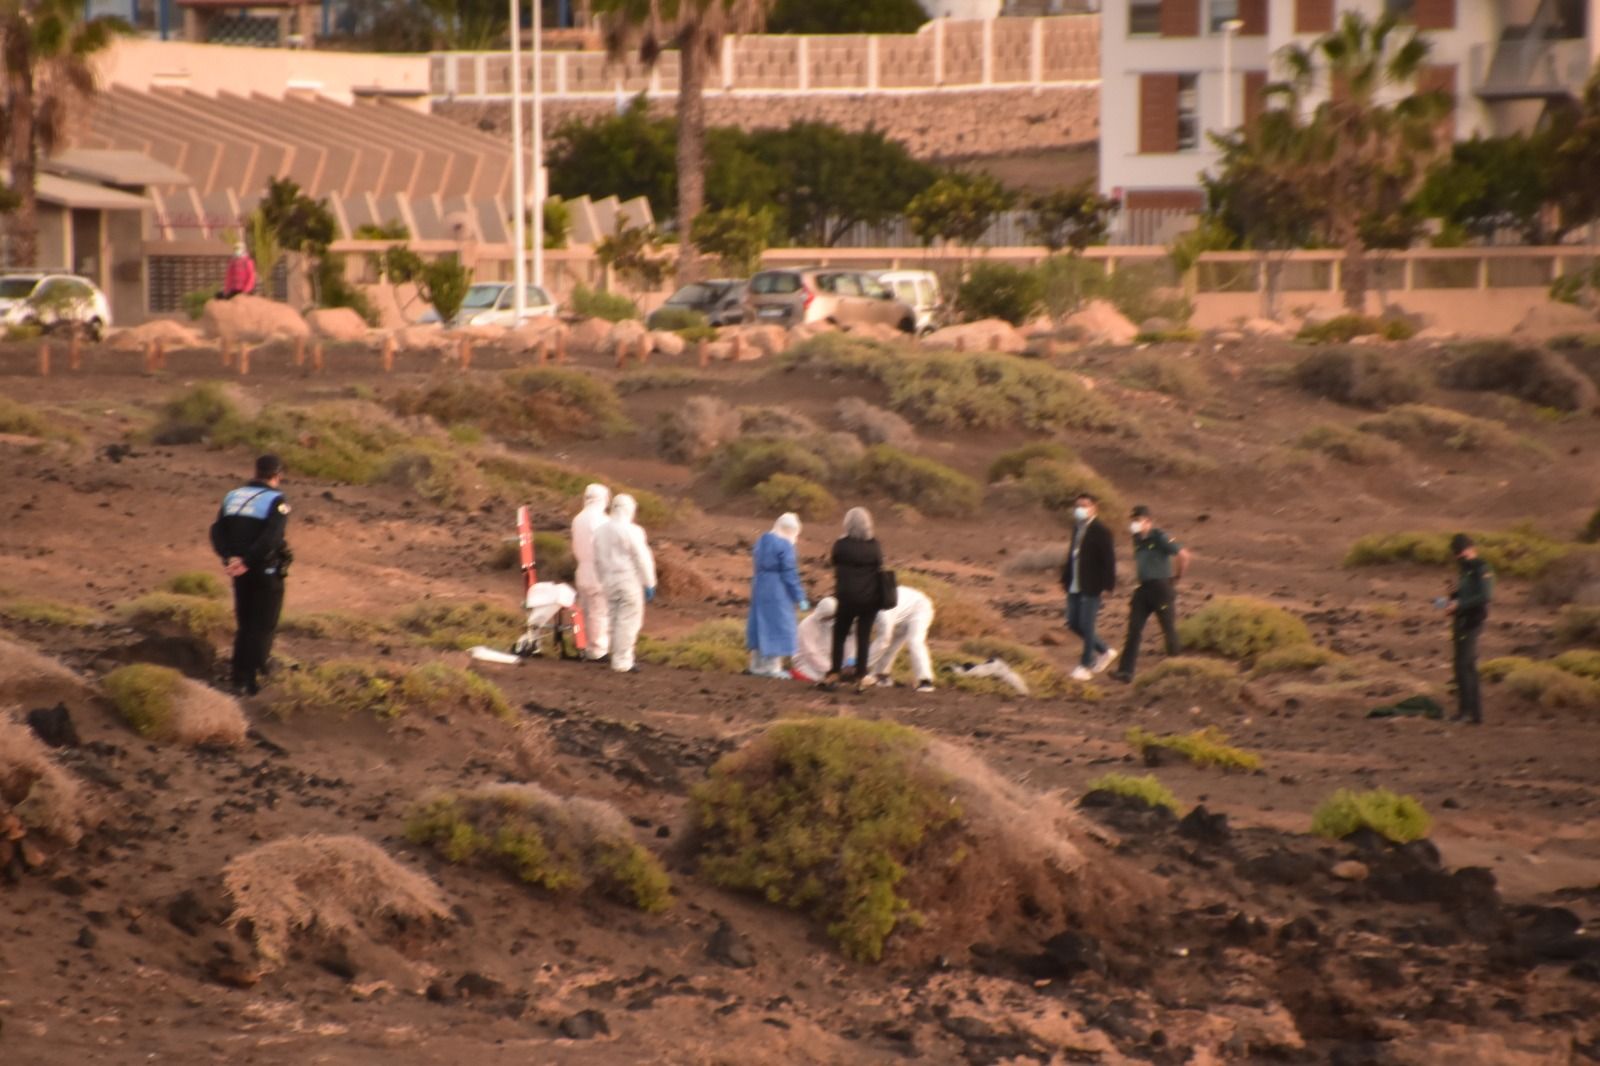 Cuatro fallecidos a bordo de un cayuco en una playa de Tenerife